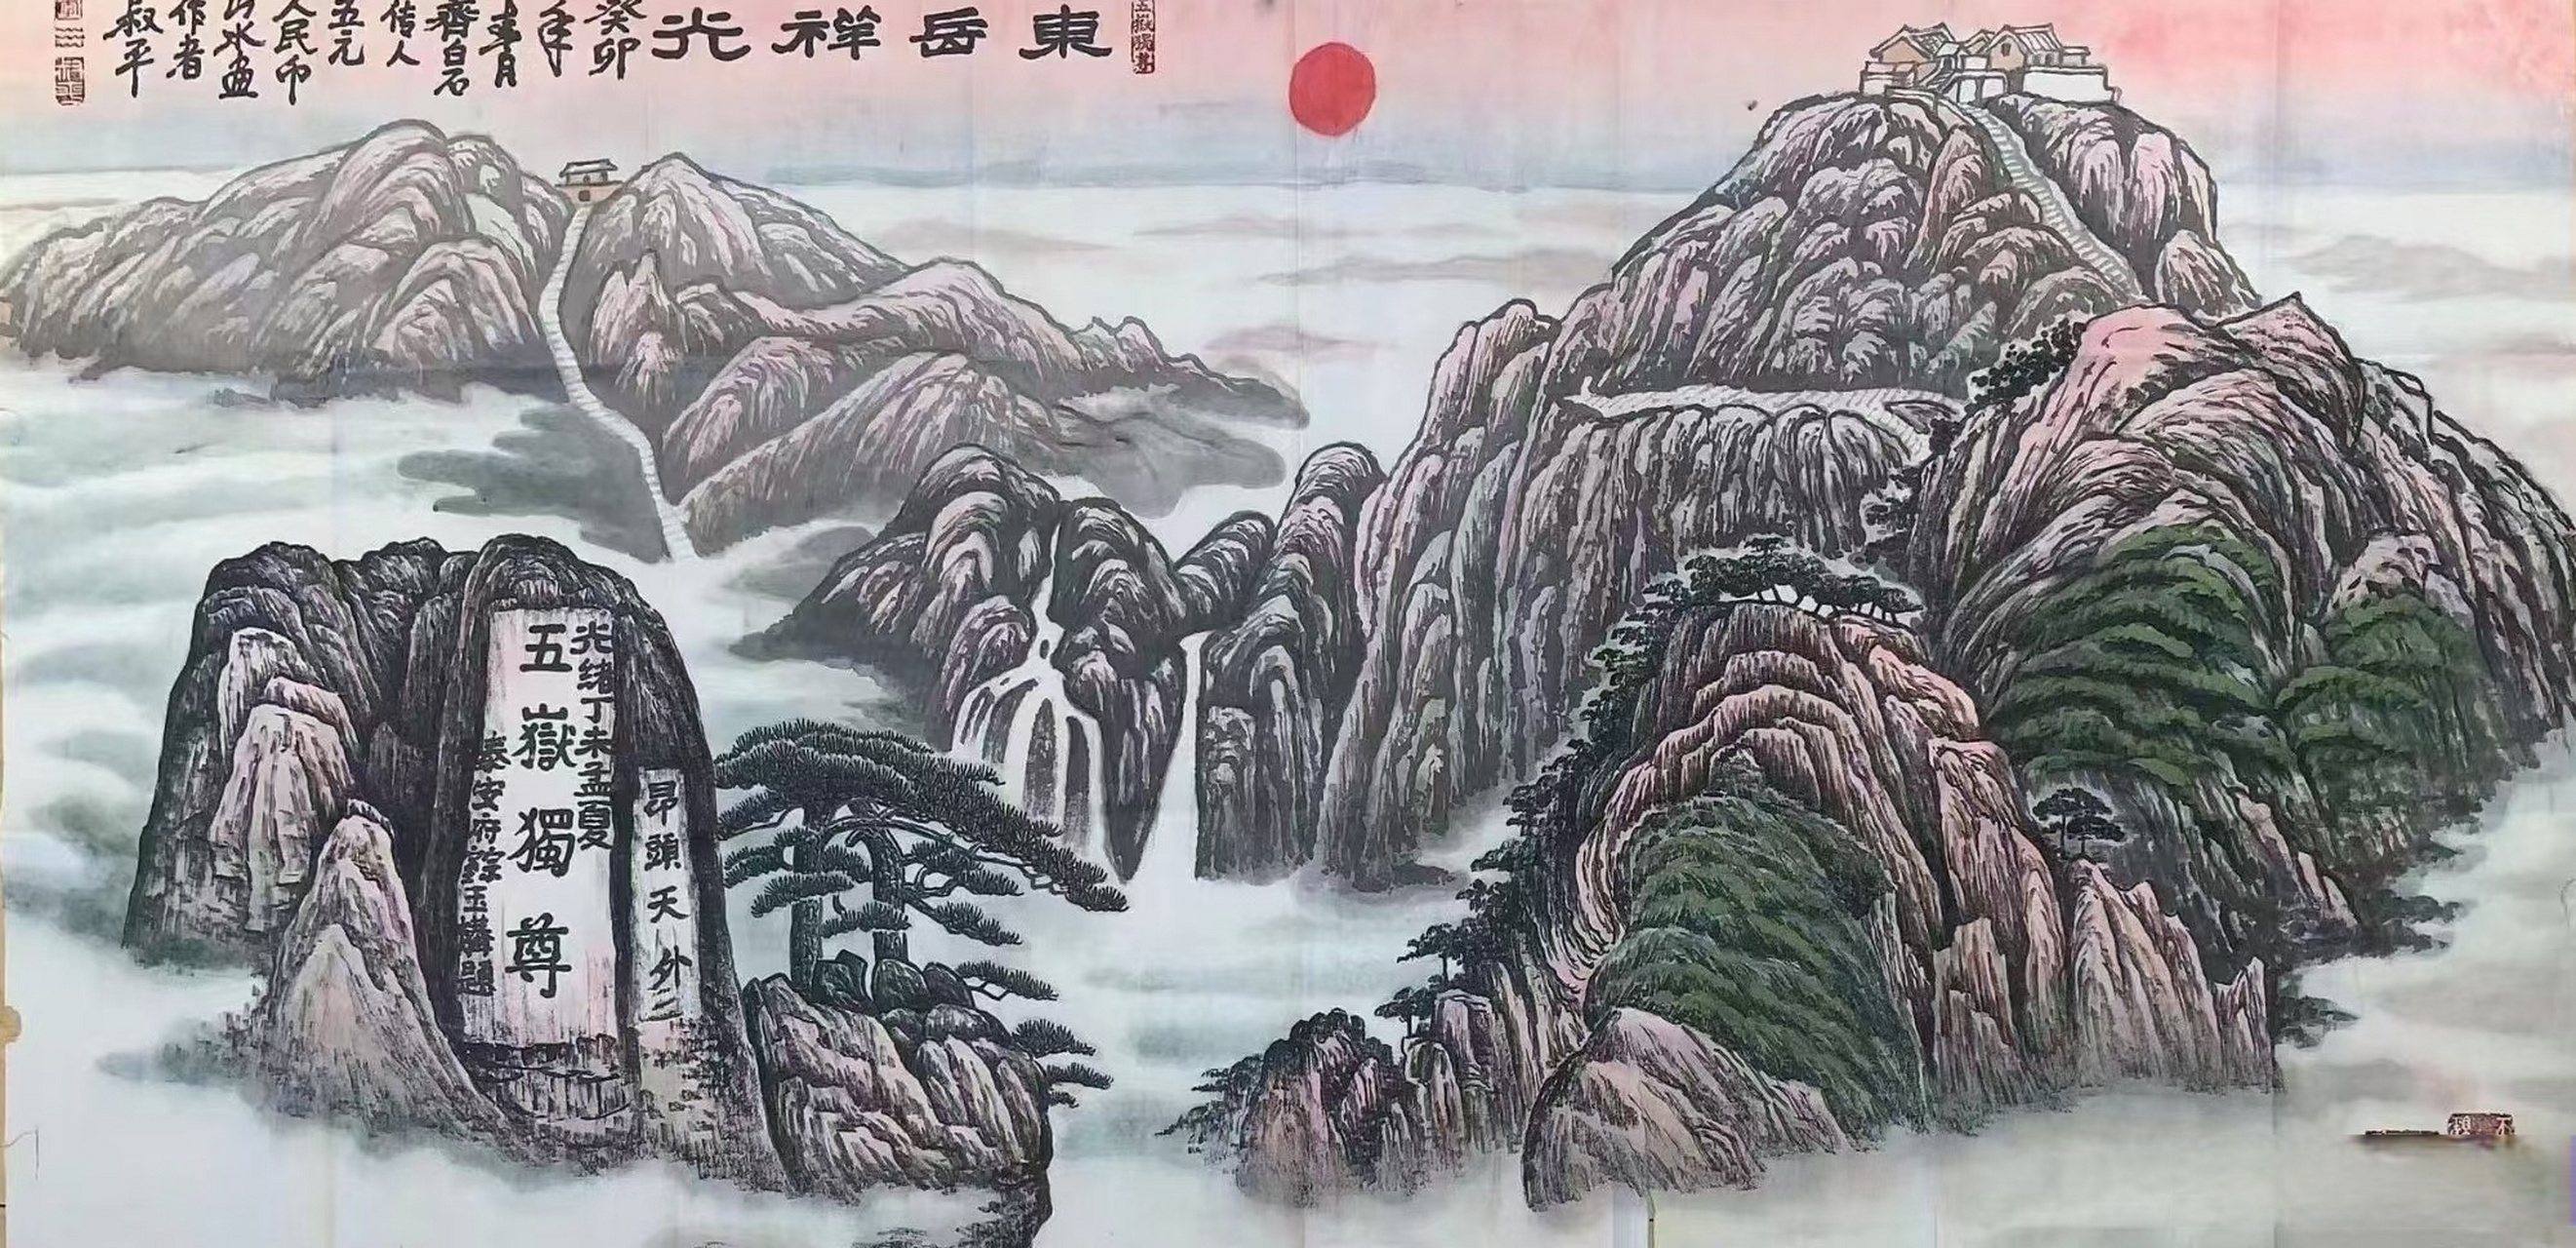 五元钱币背景图创作者(五岳独尊)画家李叔平,四尺整张山水作品